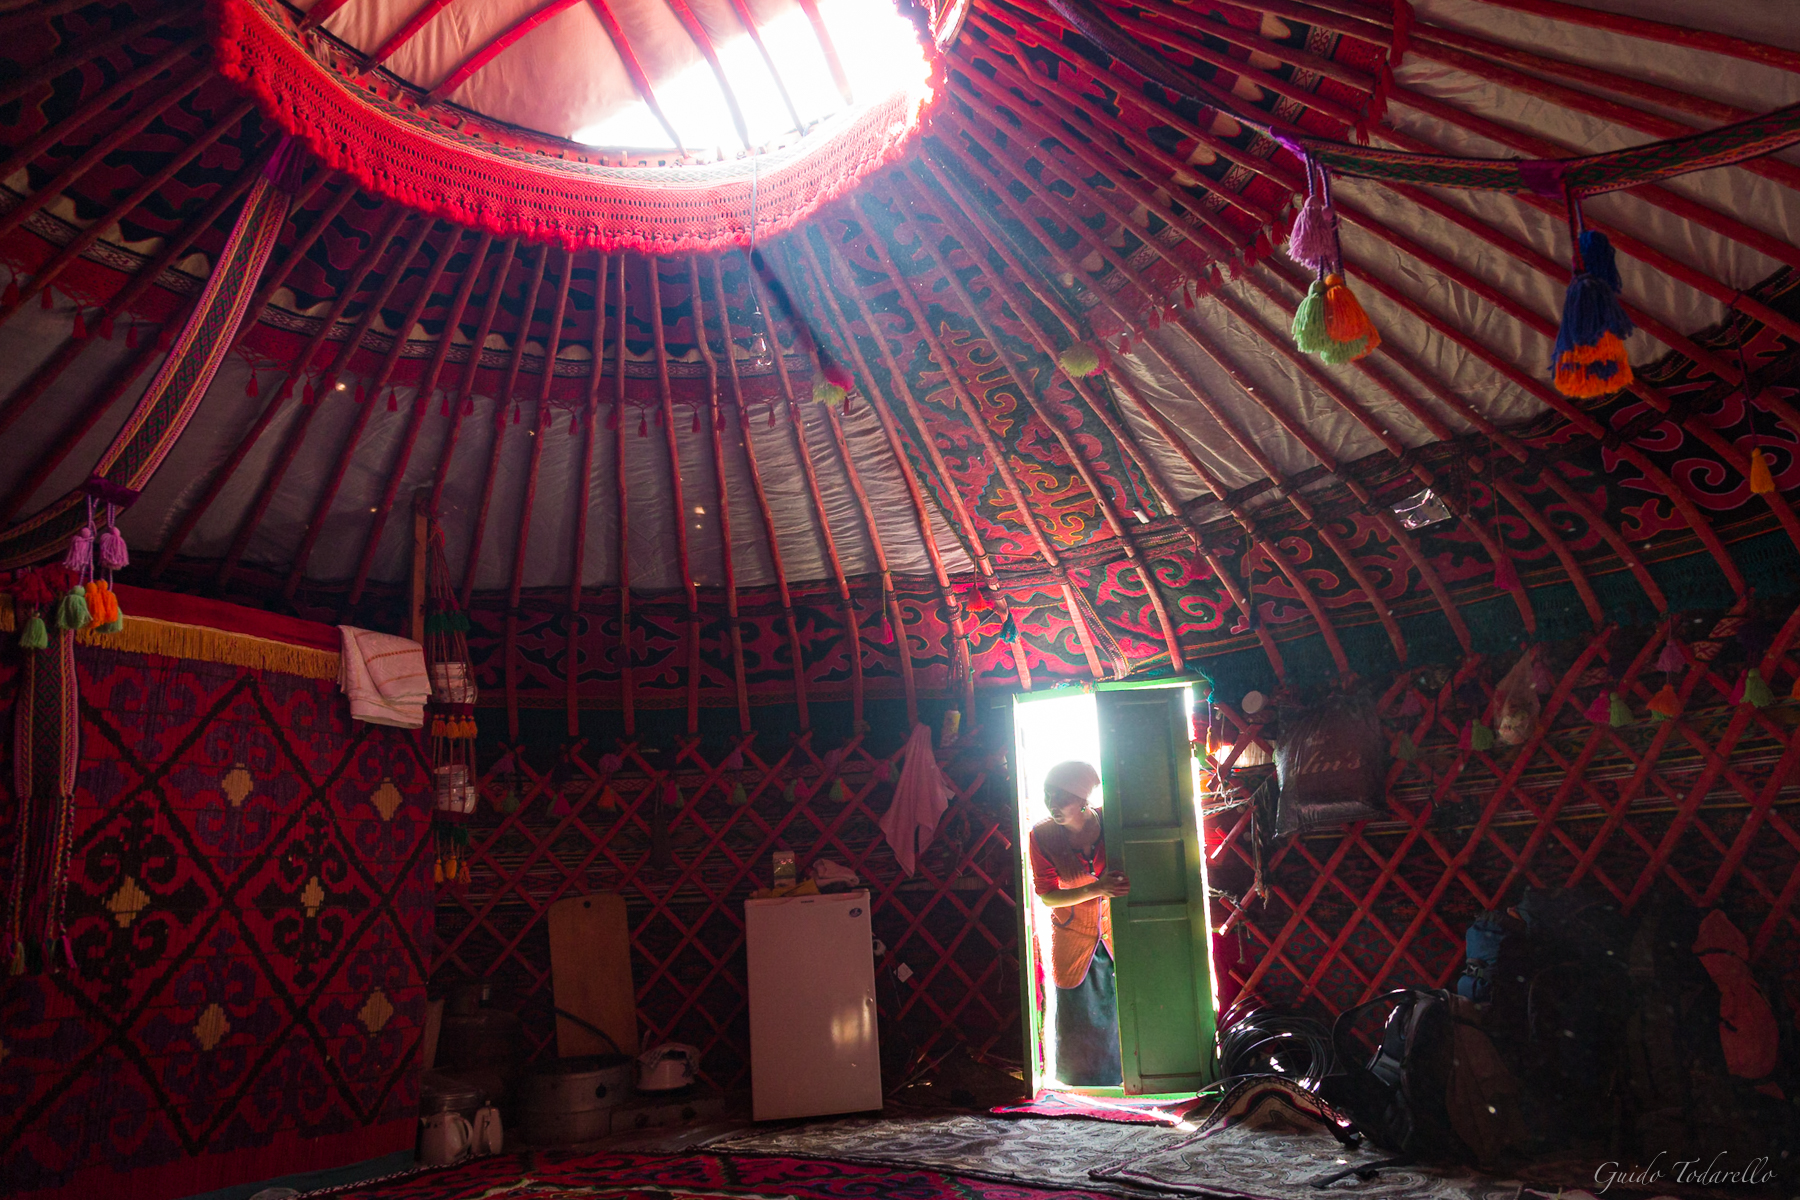 Inside a yurt...